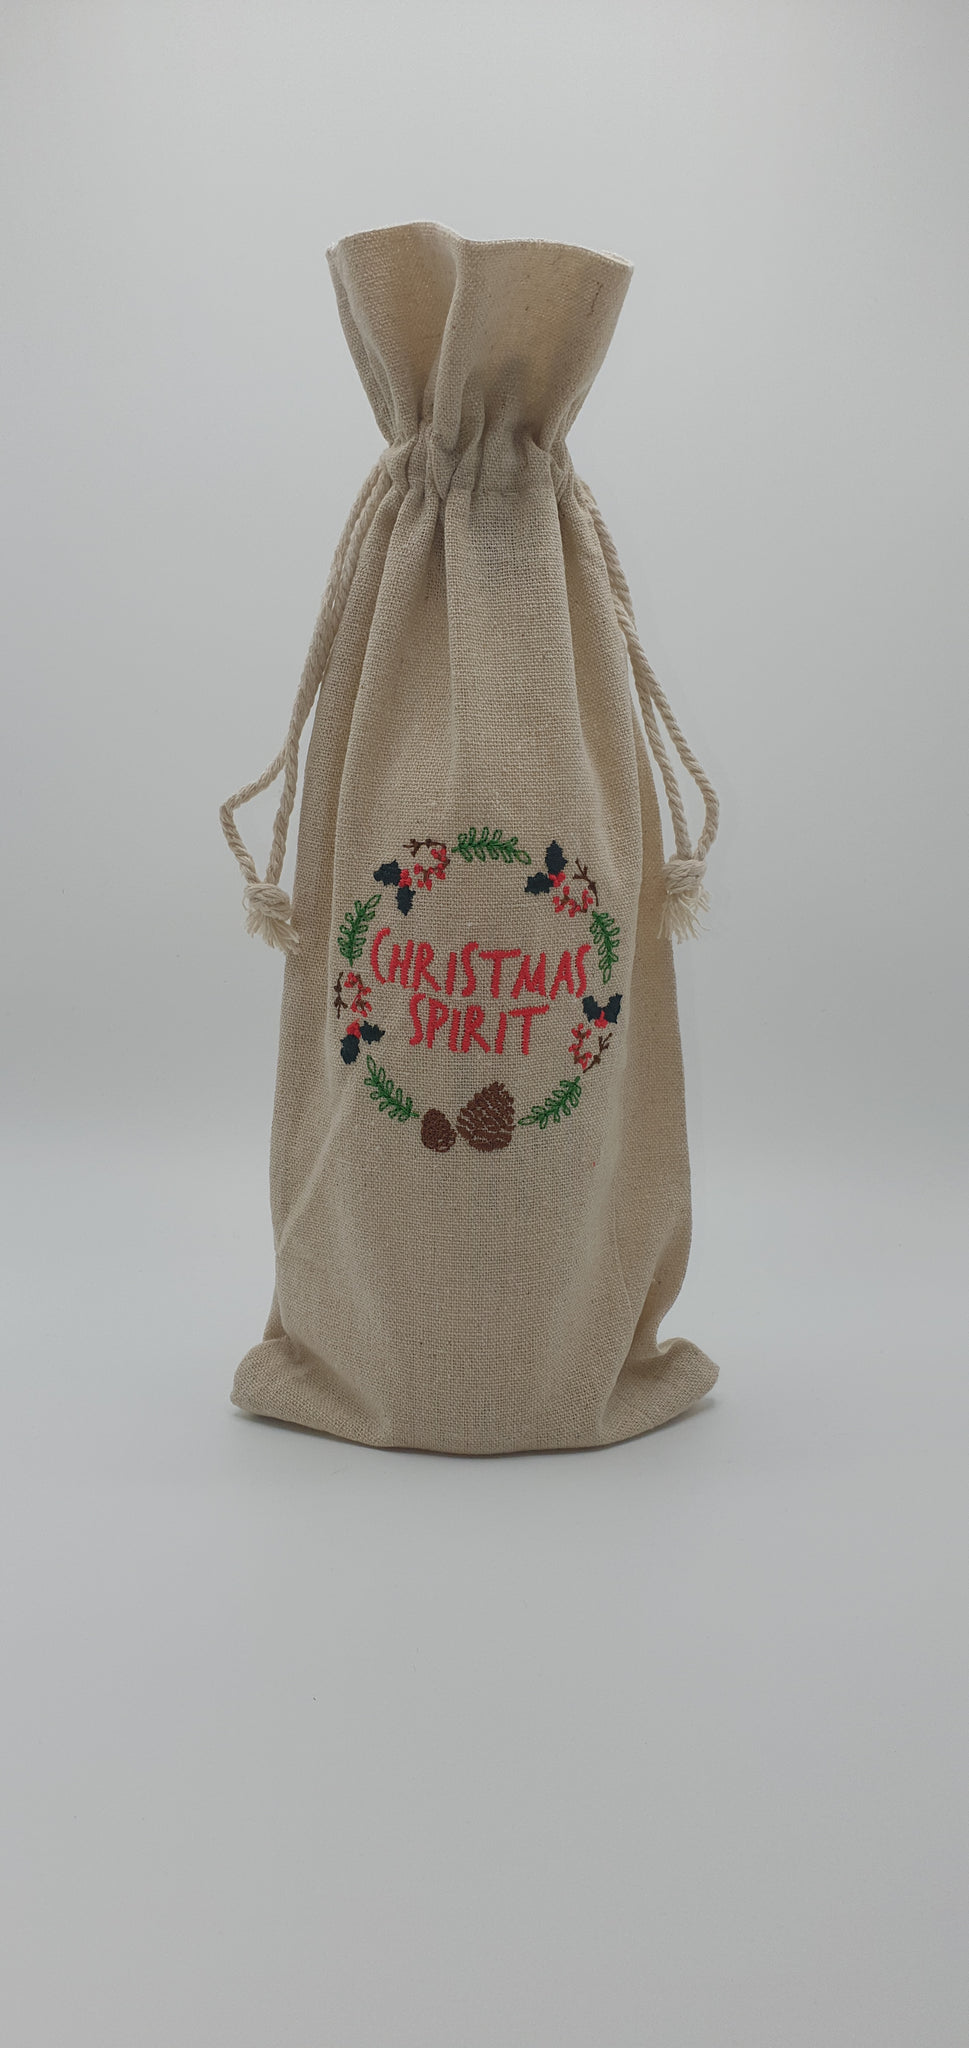 Embroidered Christmas Spirit Booze Gift Bag